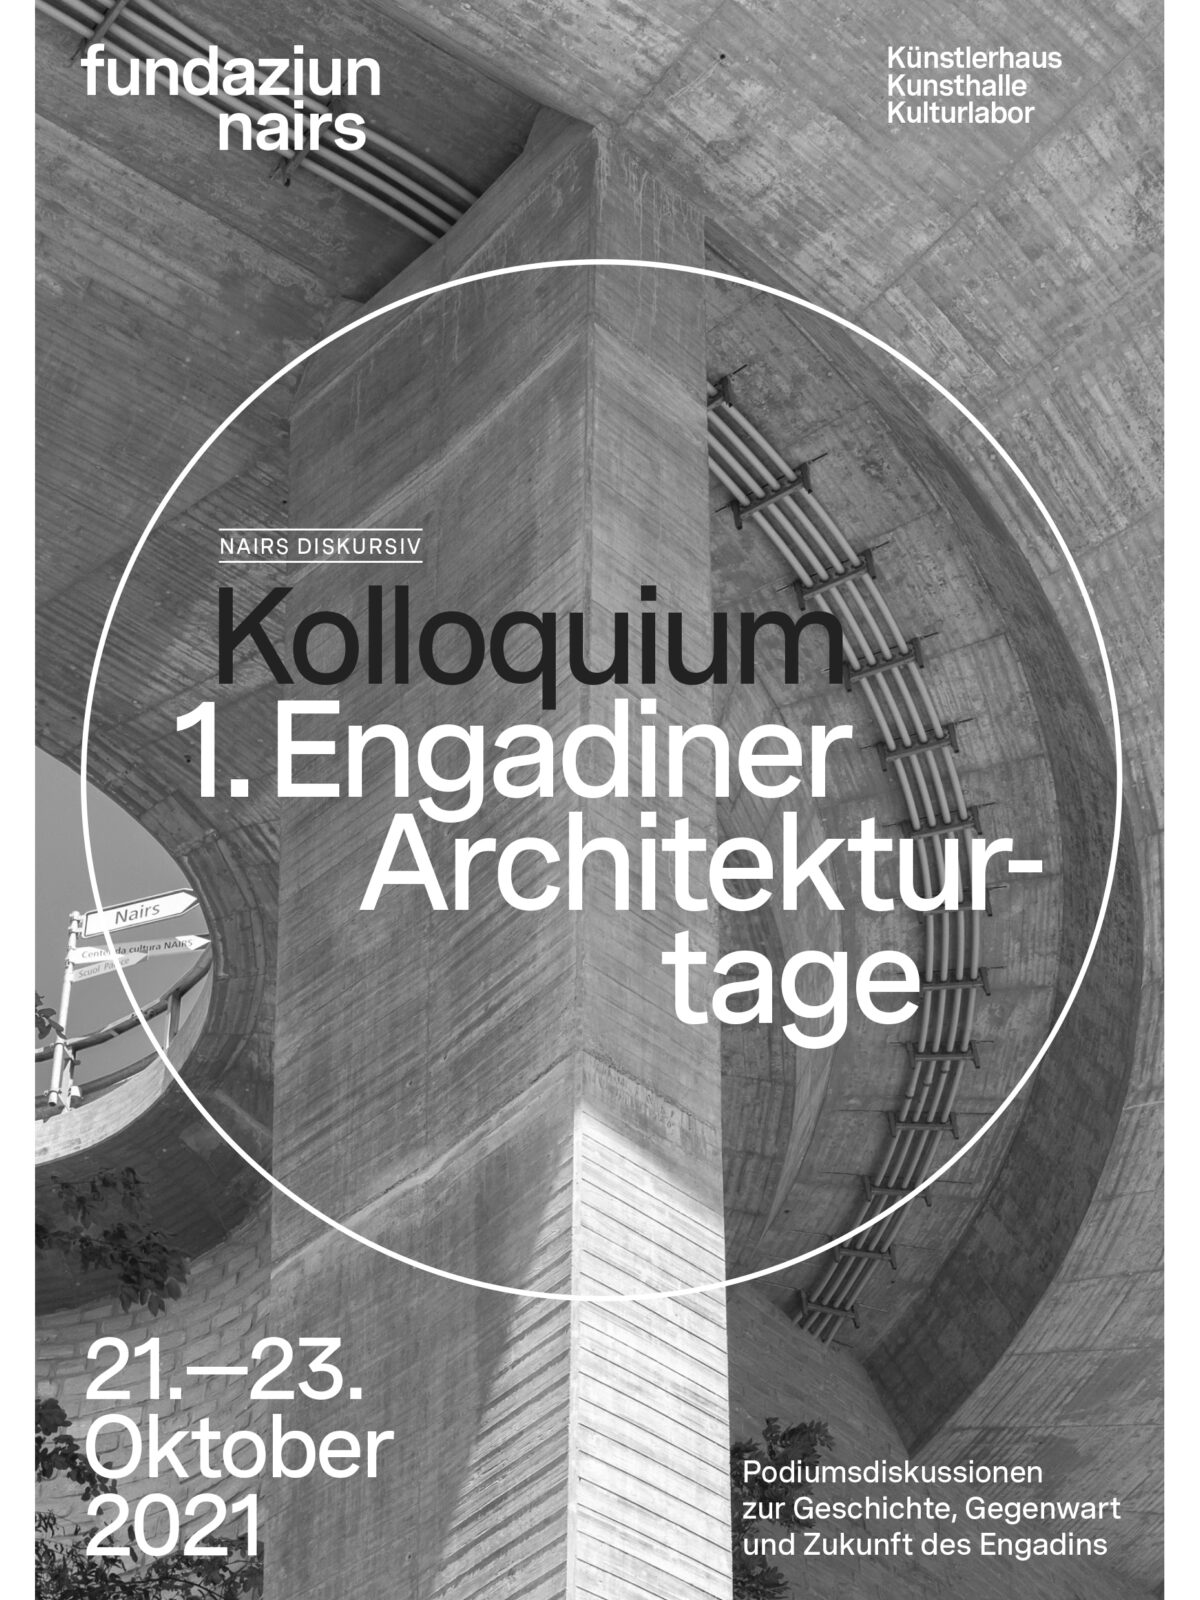 Bauliche Identität - Erste Engadiner Architekturtage 21.-23. Oktober 2021 in der Fundaziun Nairs in Scuol - Teil 1